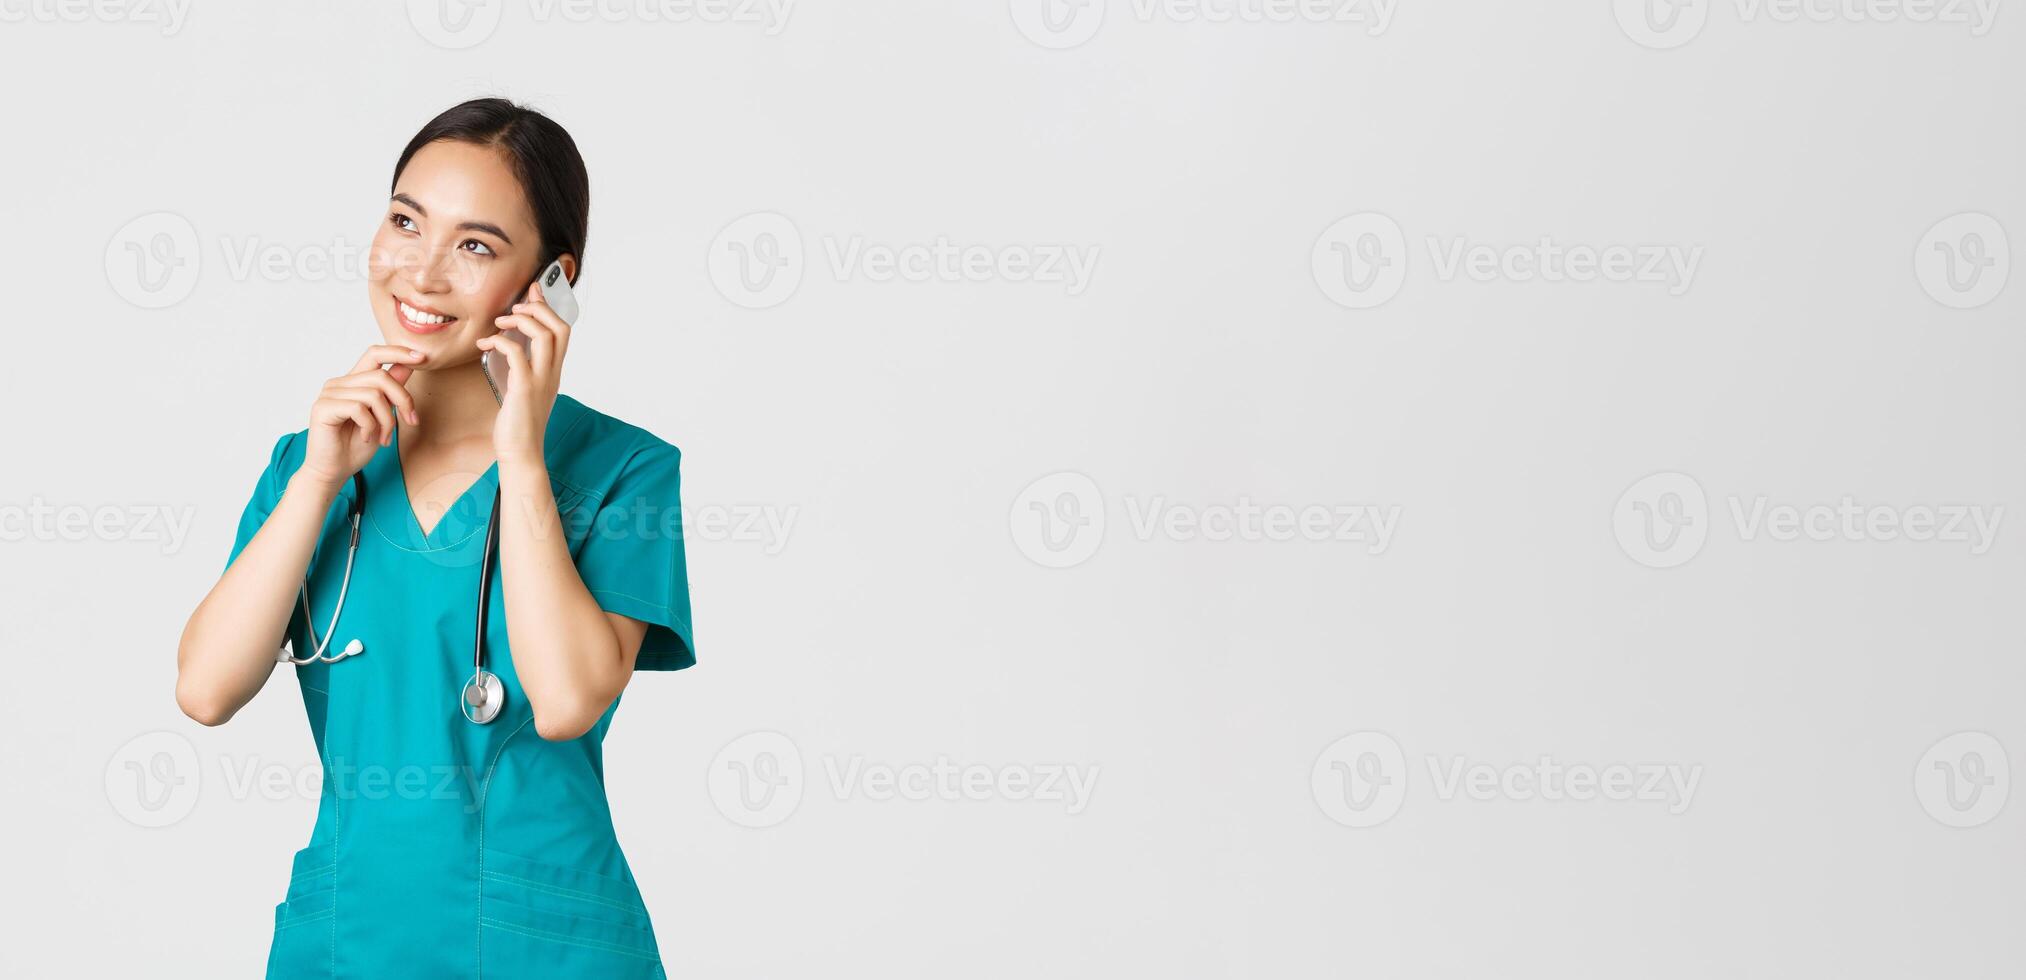 covid19, sjukvård arbetare och förebyggande virus begrepp. porträtt av leende asiatisk kvinna läkare, internera i scrubs talande på telefon och ser omtänksam, tänkande eller framställning val foto